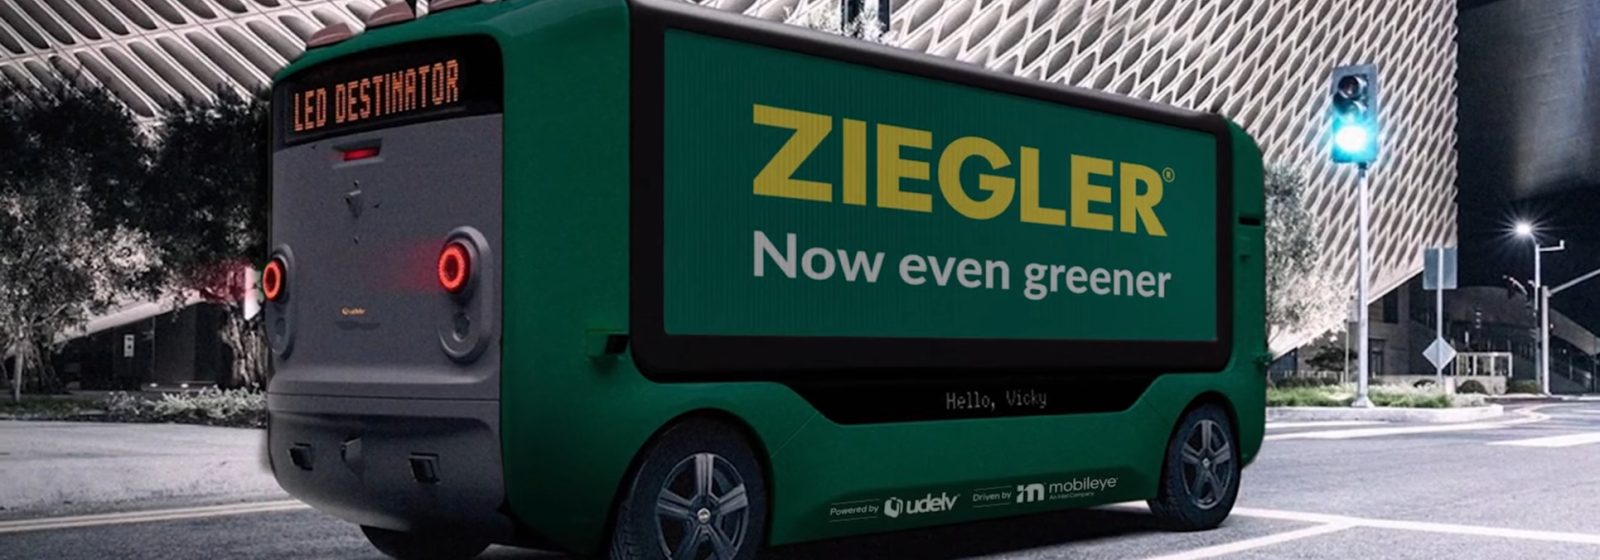 Autonome bestelwagen Udelv voor Ziegler